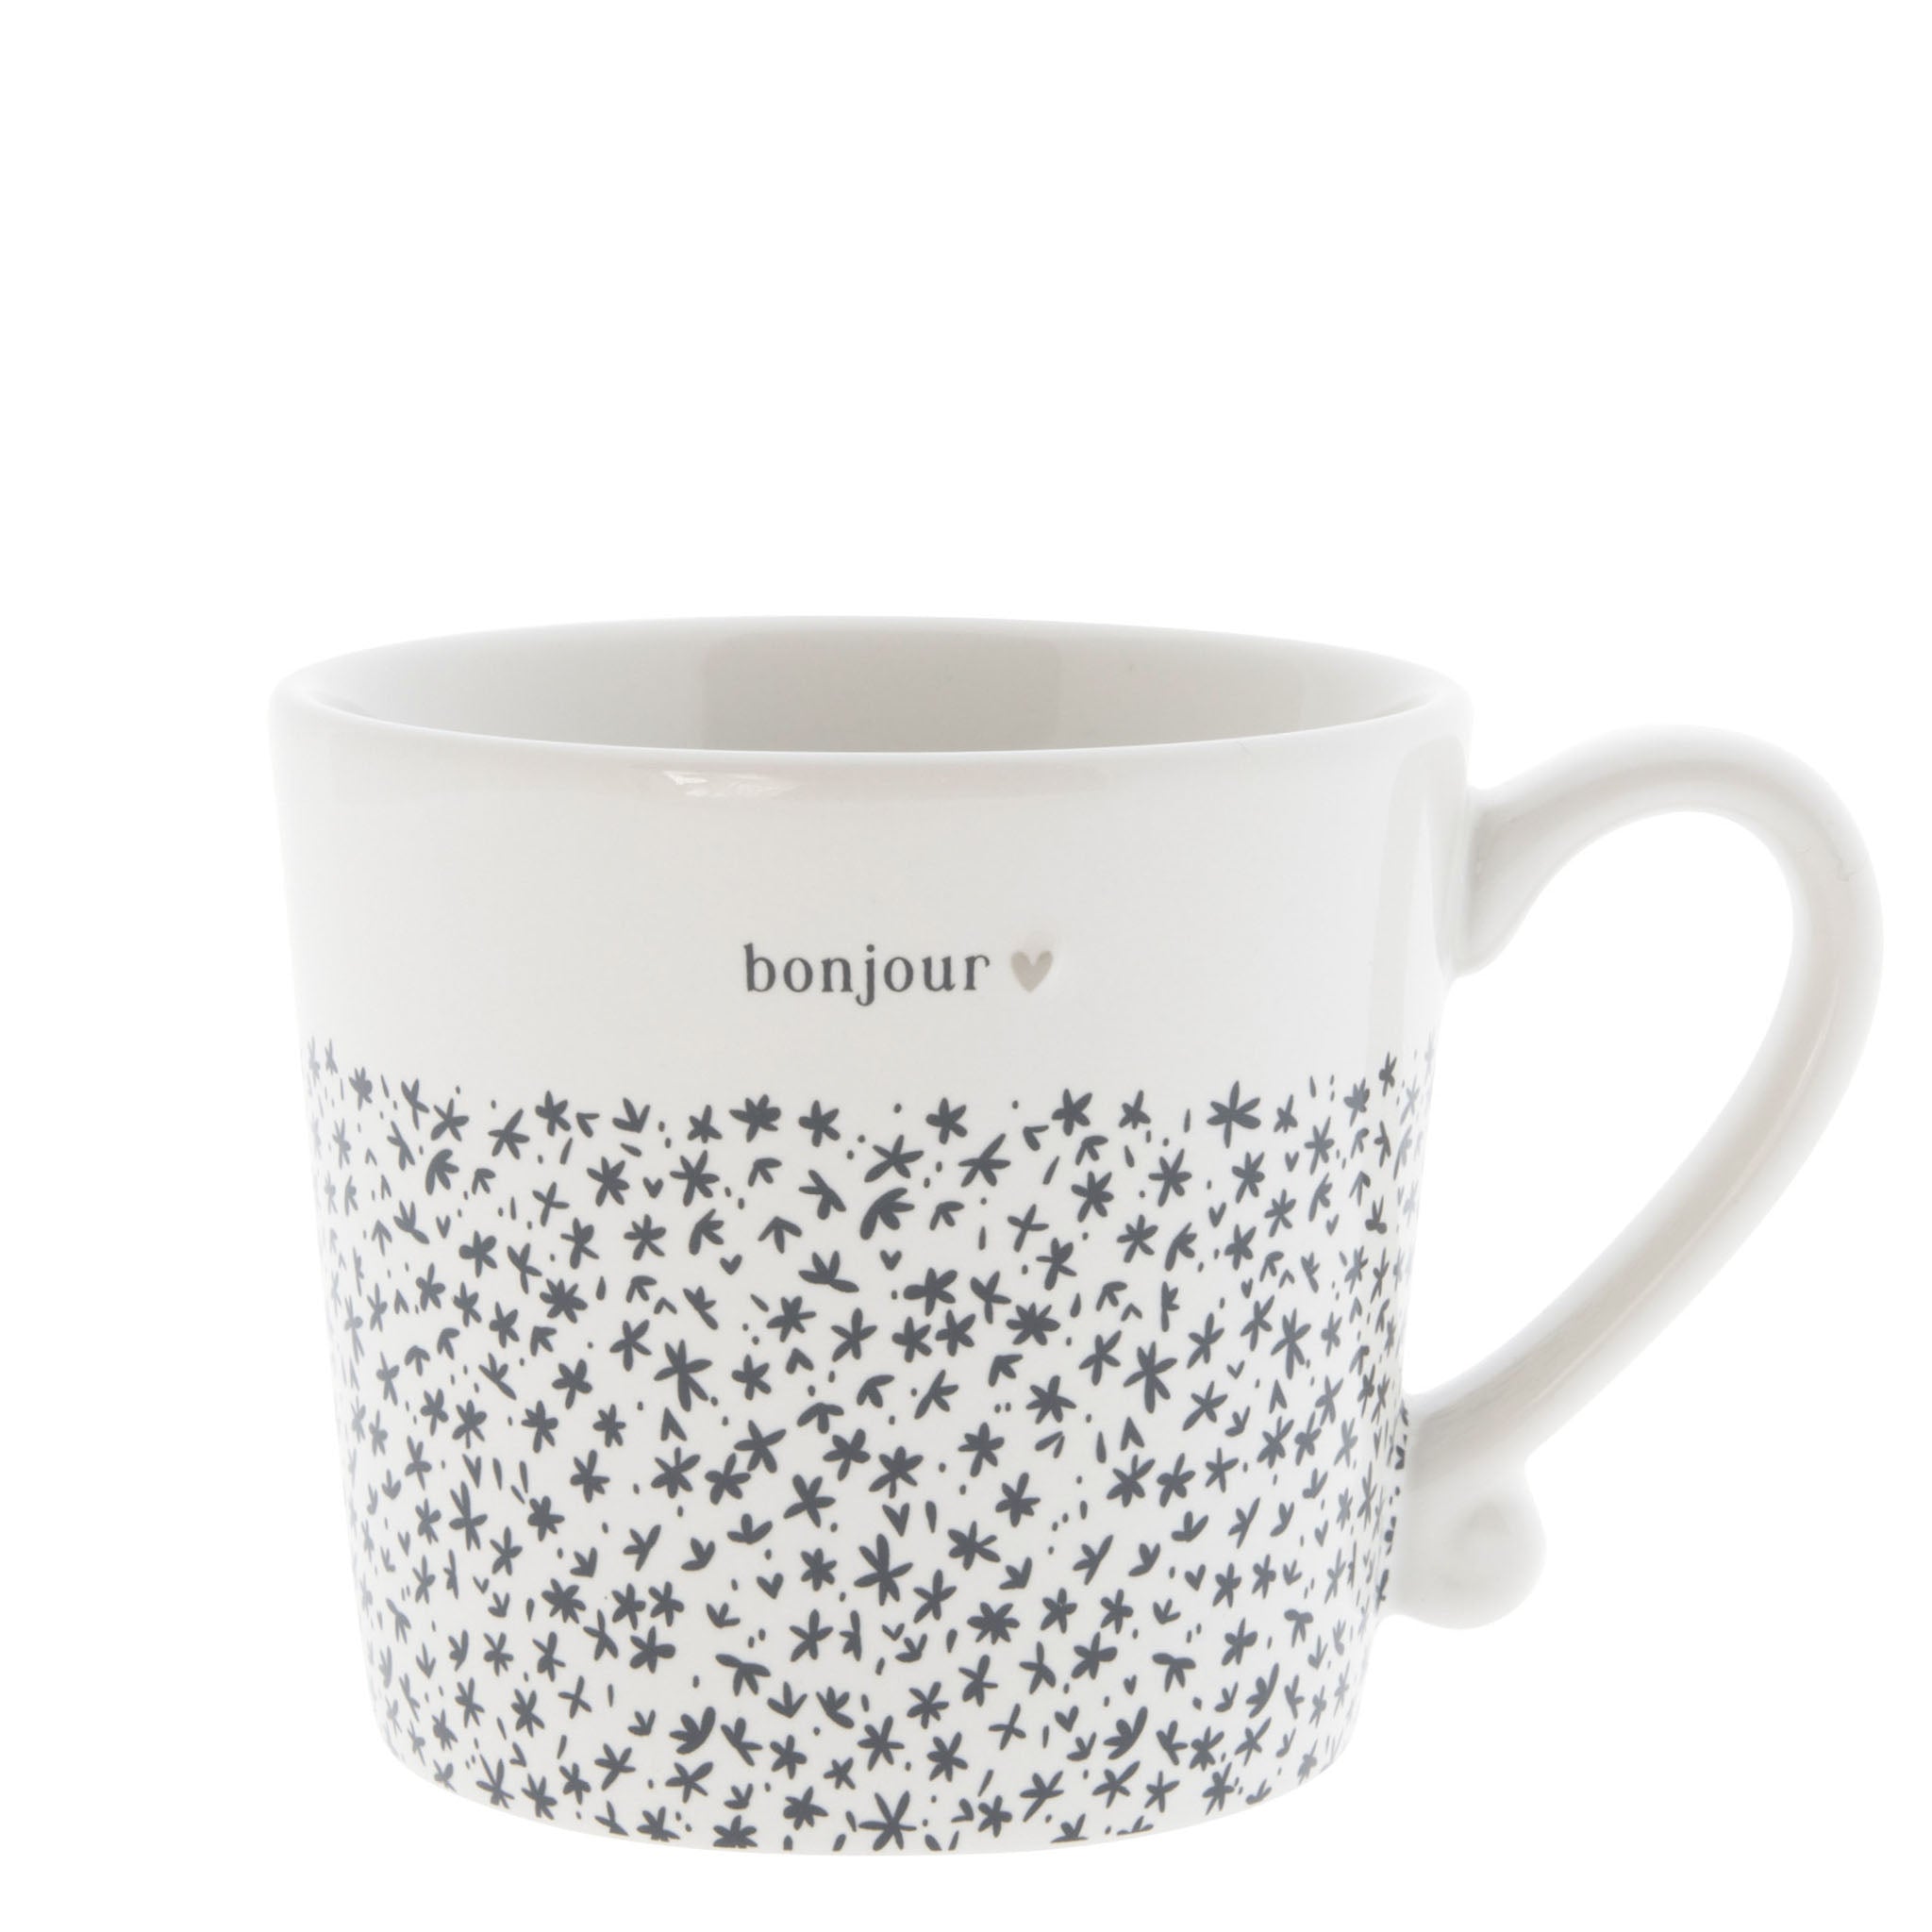 "Bonjour" Little Mug